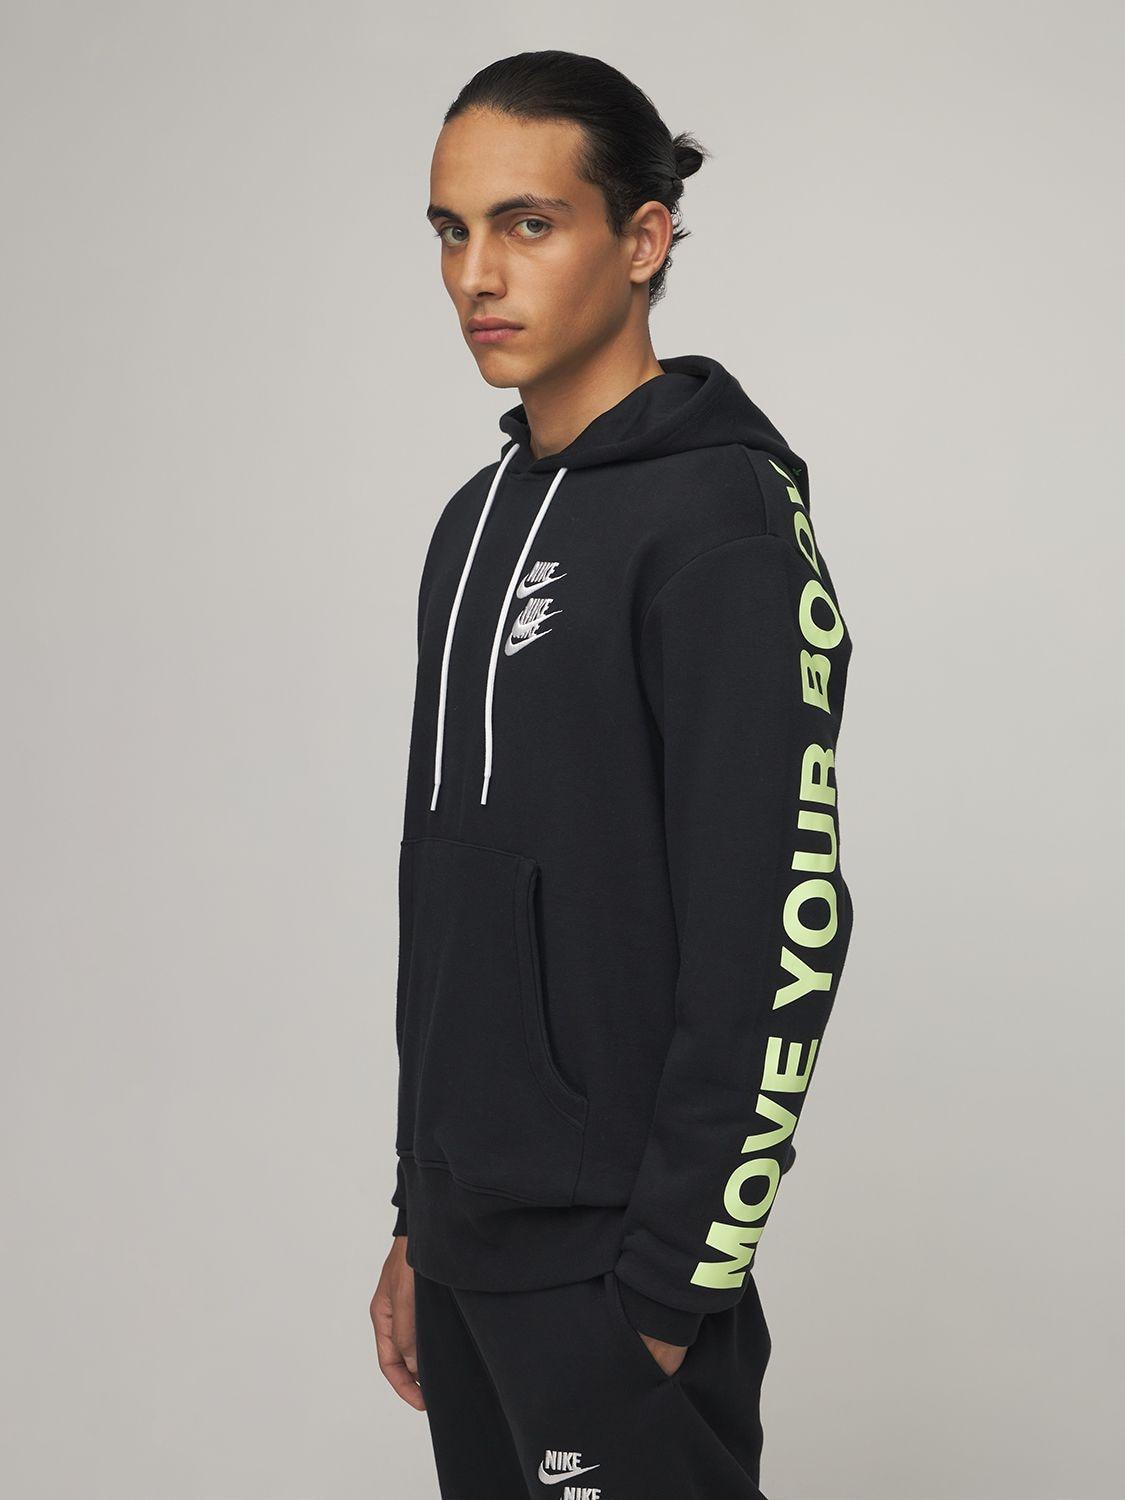 Nike World Tour Printed Sweatshirt Hoodie in Black for Men | Lyst